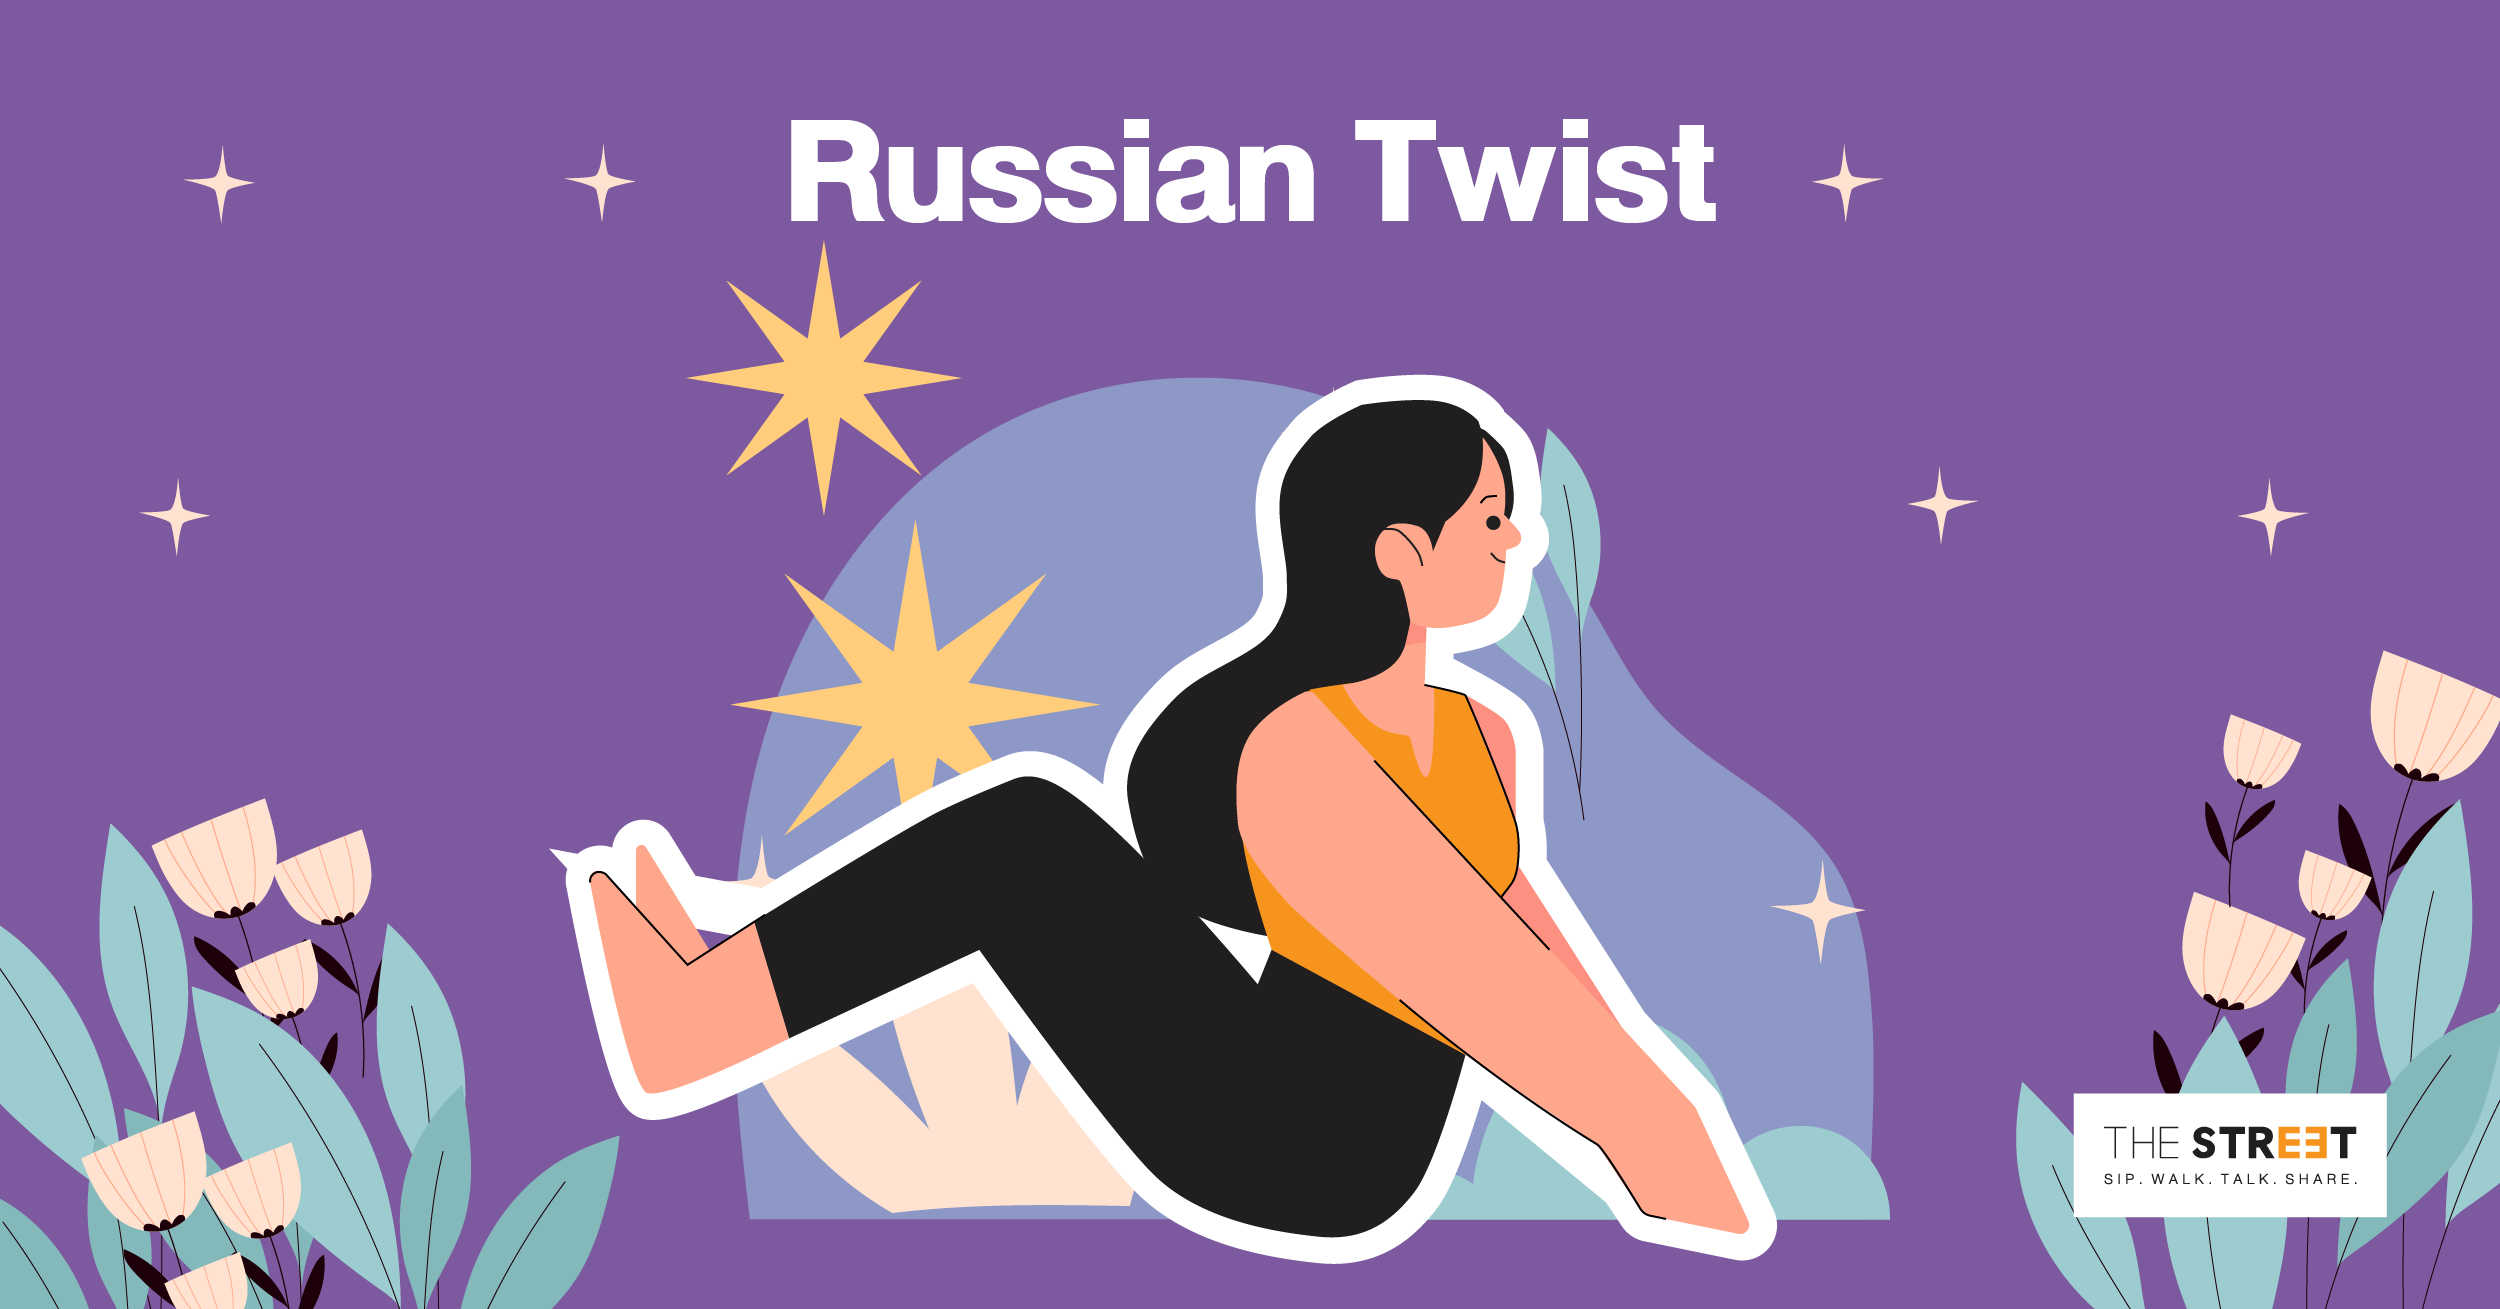 ท่าออกกำลังกาย-ลดพุง-russian-twist